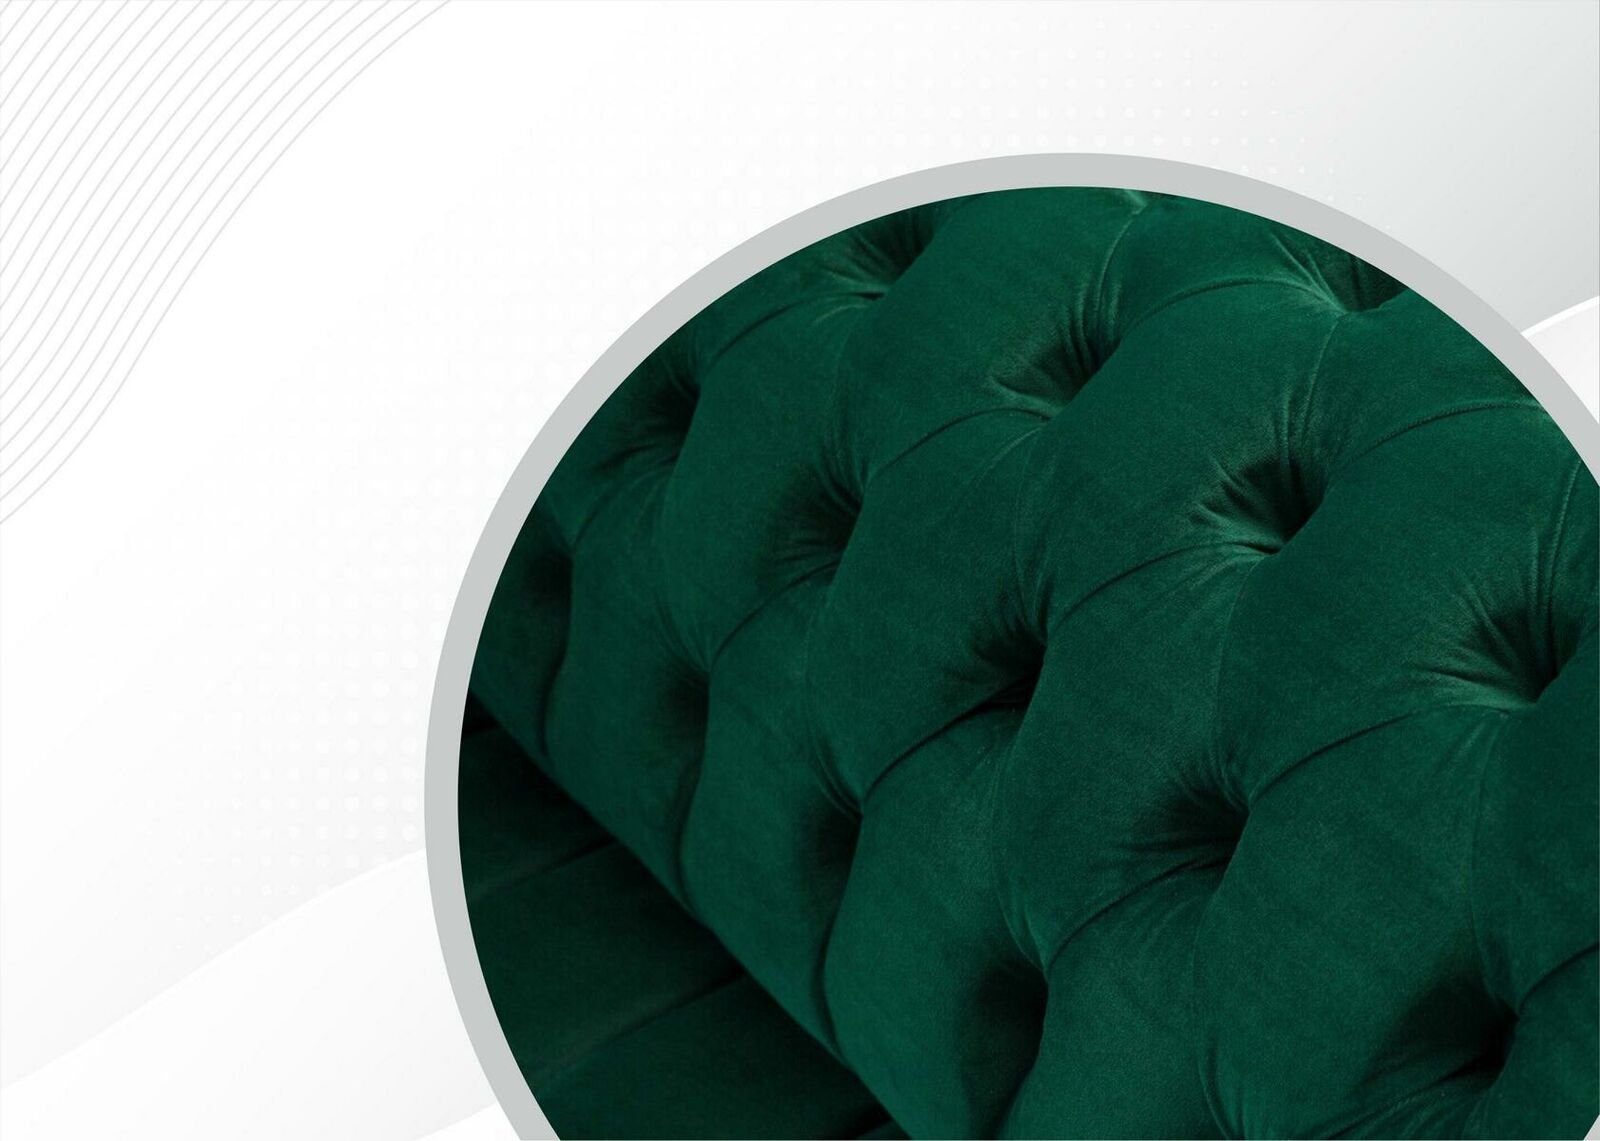 Neu, Europe JVmoebel Luxus 3+2+1.5 Sitzer Couchgarnitur Chesterfield-Sofa Made Chesterfield in Grüne Sofas